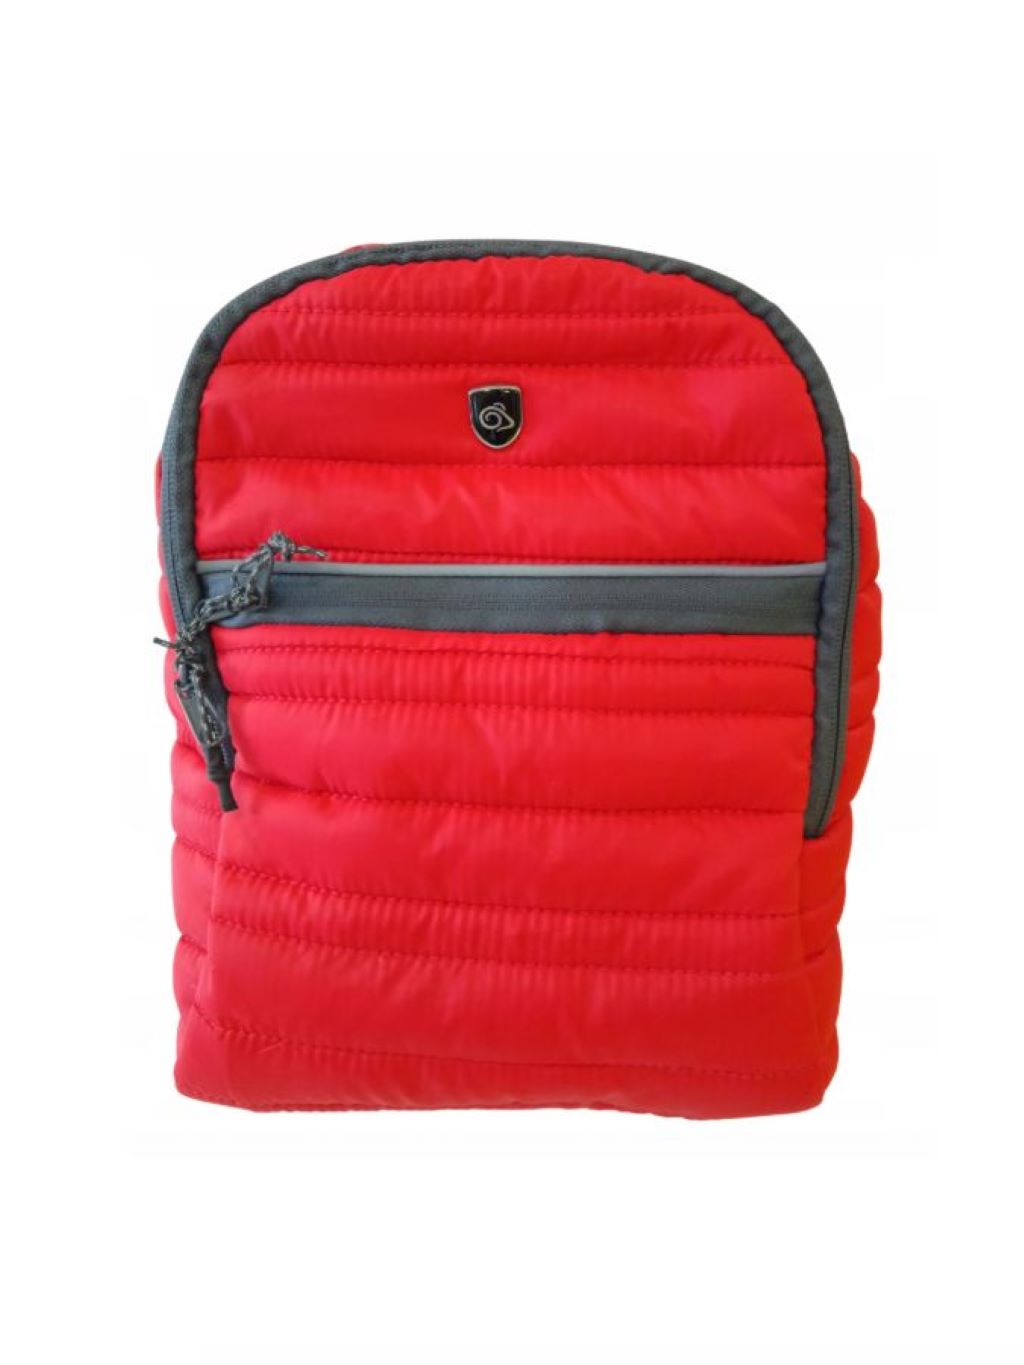 mały sportowy plecak czerwony pikowany - CRAGHOPPERS zdjęcie 1